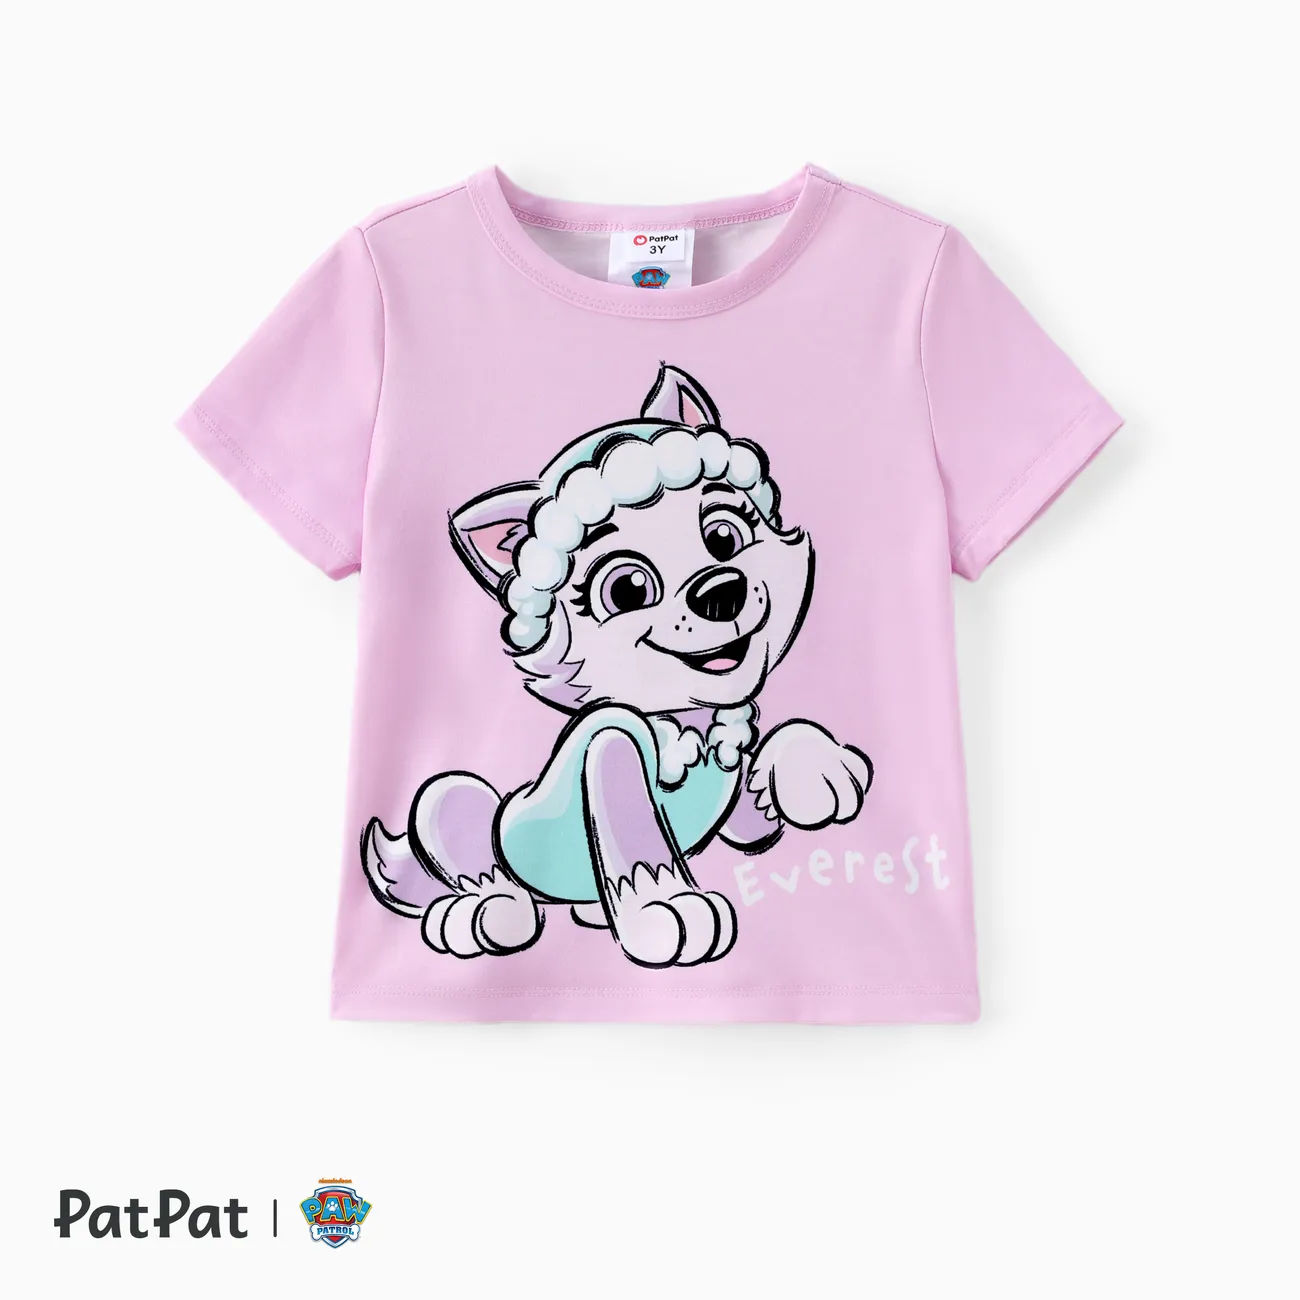 Patrulha Canina Unissexo Infantil T-shirts Roxo Claro big image 1